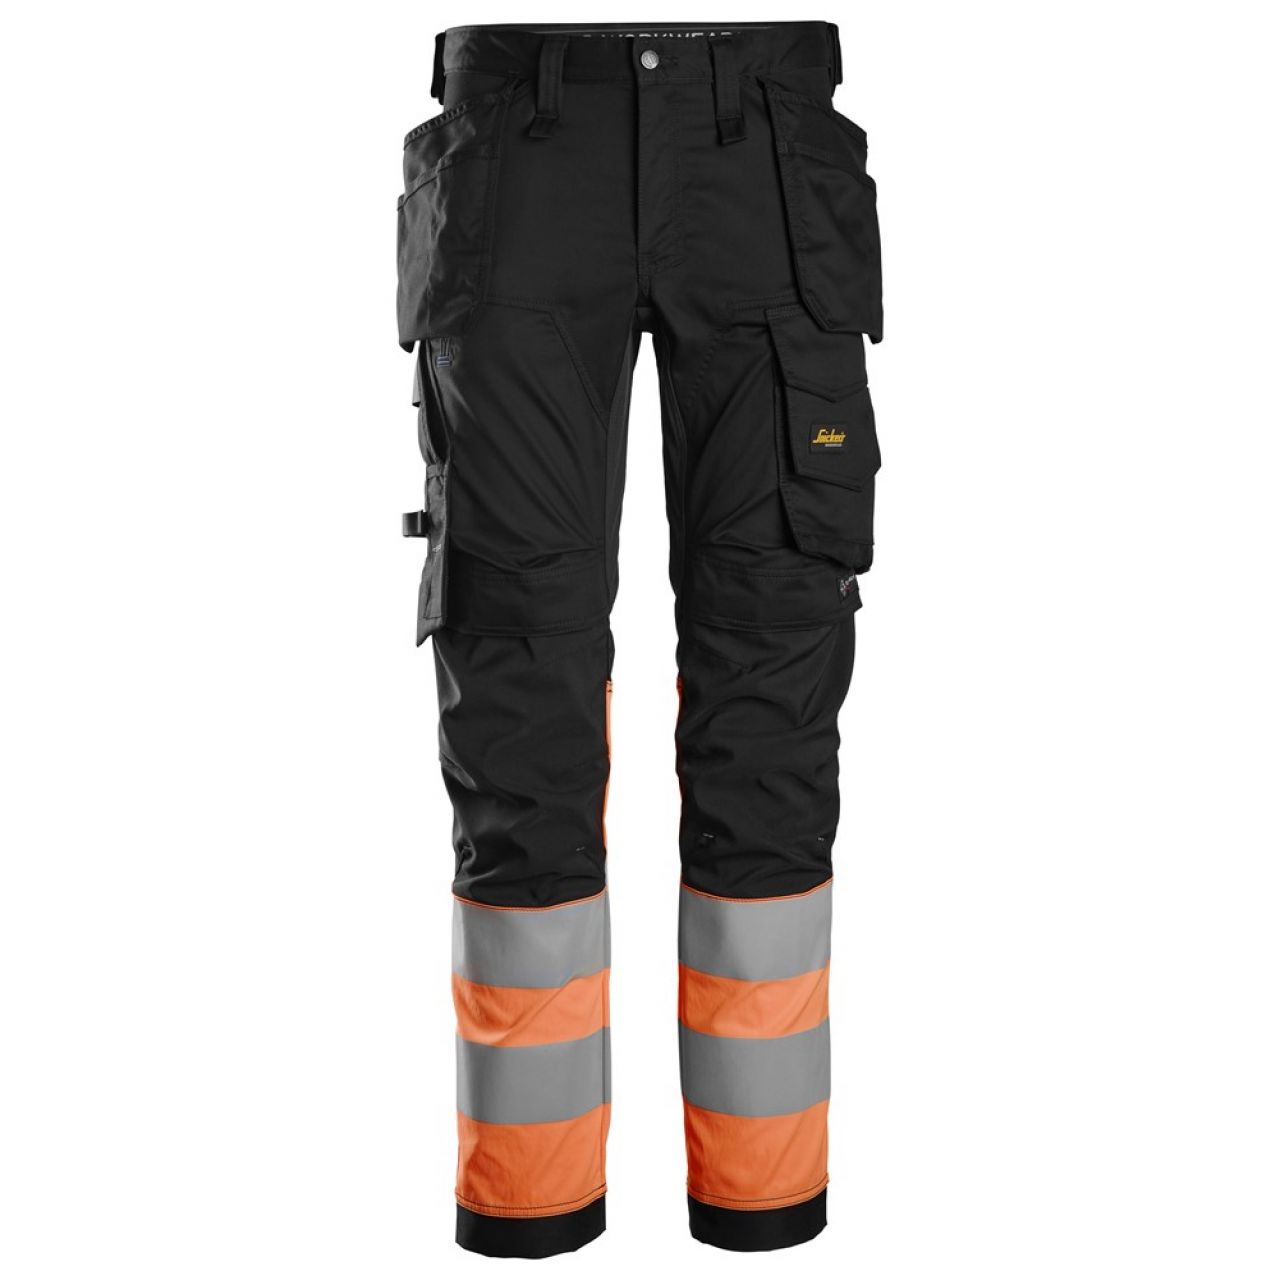 6234 Pantalones largos de trabajo elásticos de alta visibilidad clase 1 con bolsillos flotantes negro-naranja talla 158